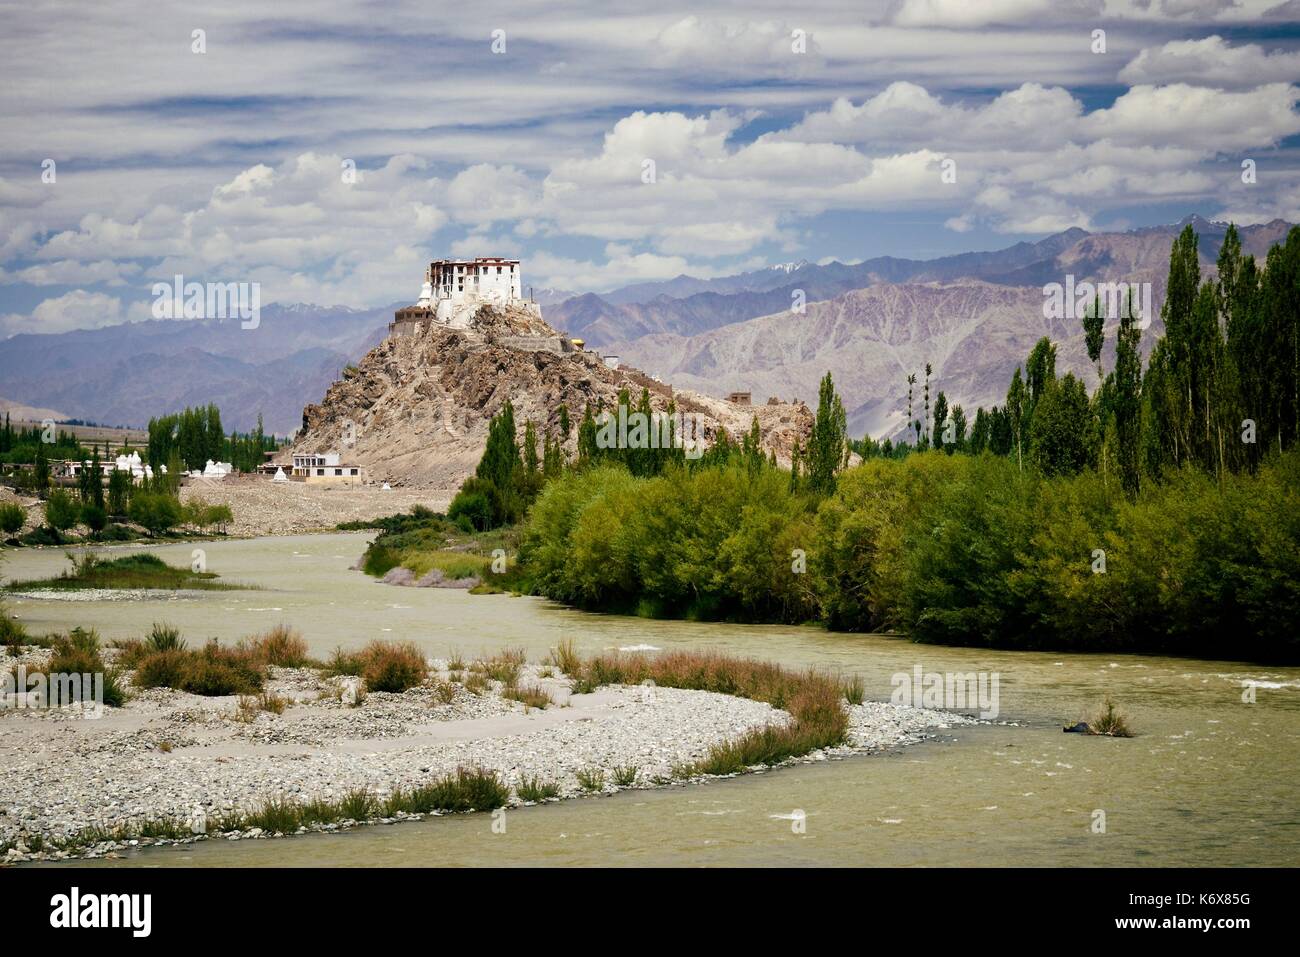 India, dello Stato del Jammu e Kashmir, Himalaya, Ladakh, Indus Valle, monastero buddista di Stakna e fiume Indo Foto Stock